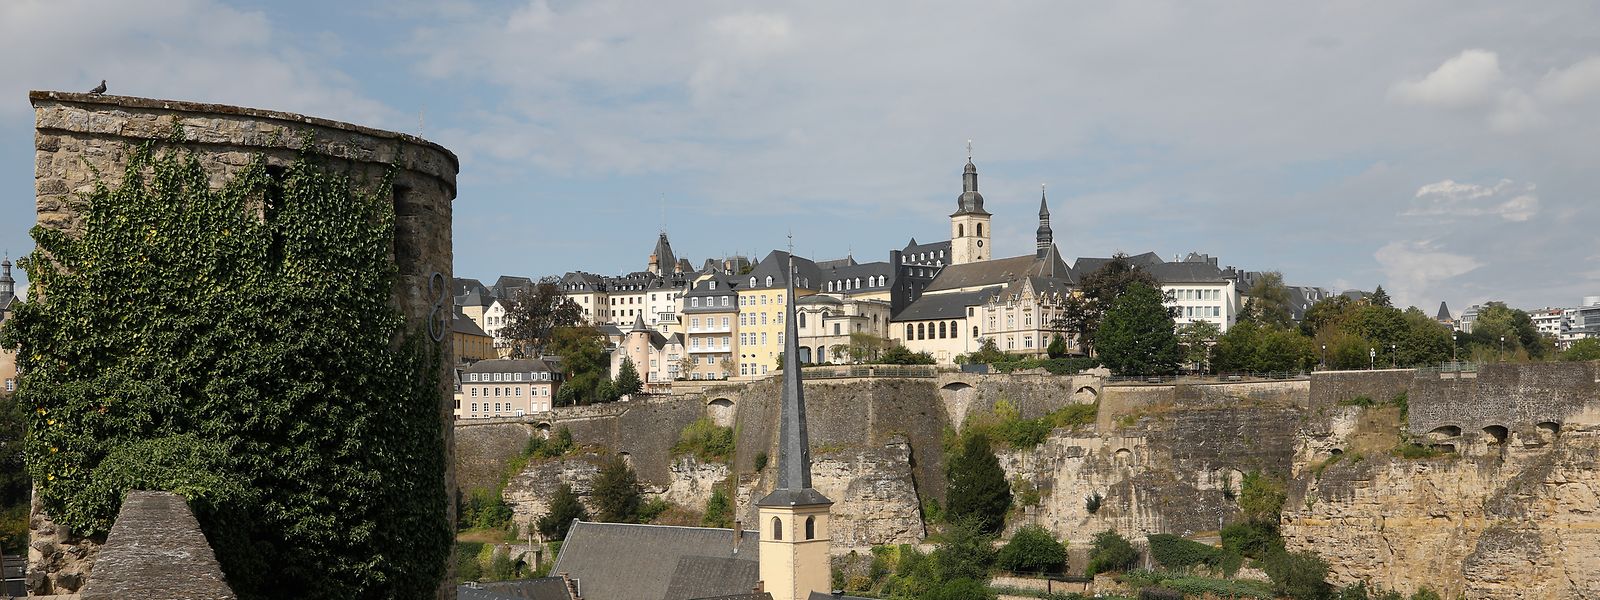 Luxemburg gehört im internationalen Vergleich nicht mehr zu den hundert teuersten Städten. Das liegt aber auch an Währungsschwankungen.  